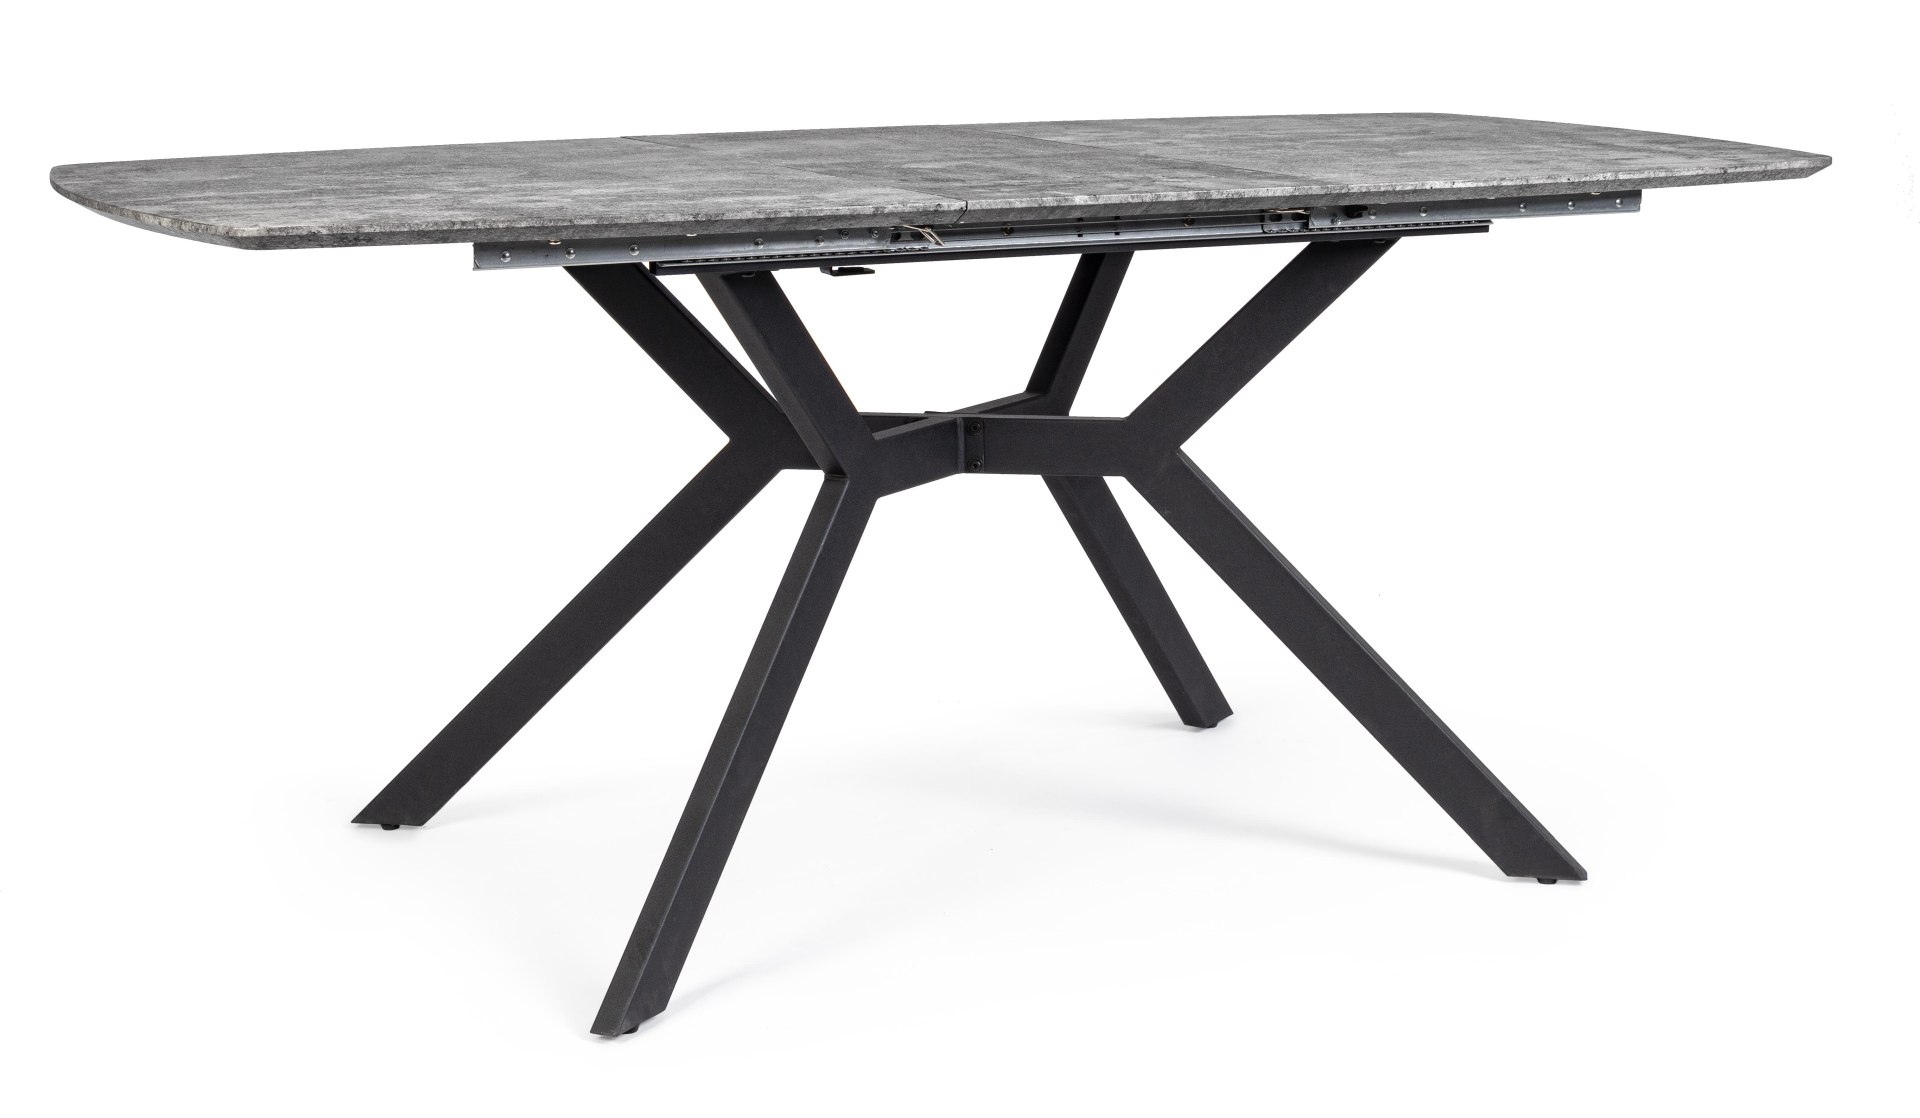 Der Esstisch Dominik überzeugt mit seinem klassischem Design. Gefertigt wurde er aus MDF, welches eine Holz-Optik besitzt. Das Gestell des Tisches ist aus Metall und hat eine schwarze Farbe. Der Tisch ist ausziehbar von einer Breite von 140 cm auf 180 cm.